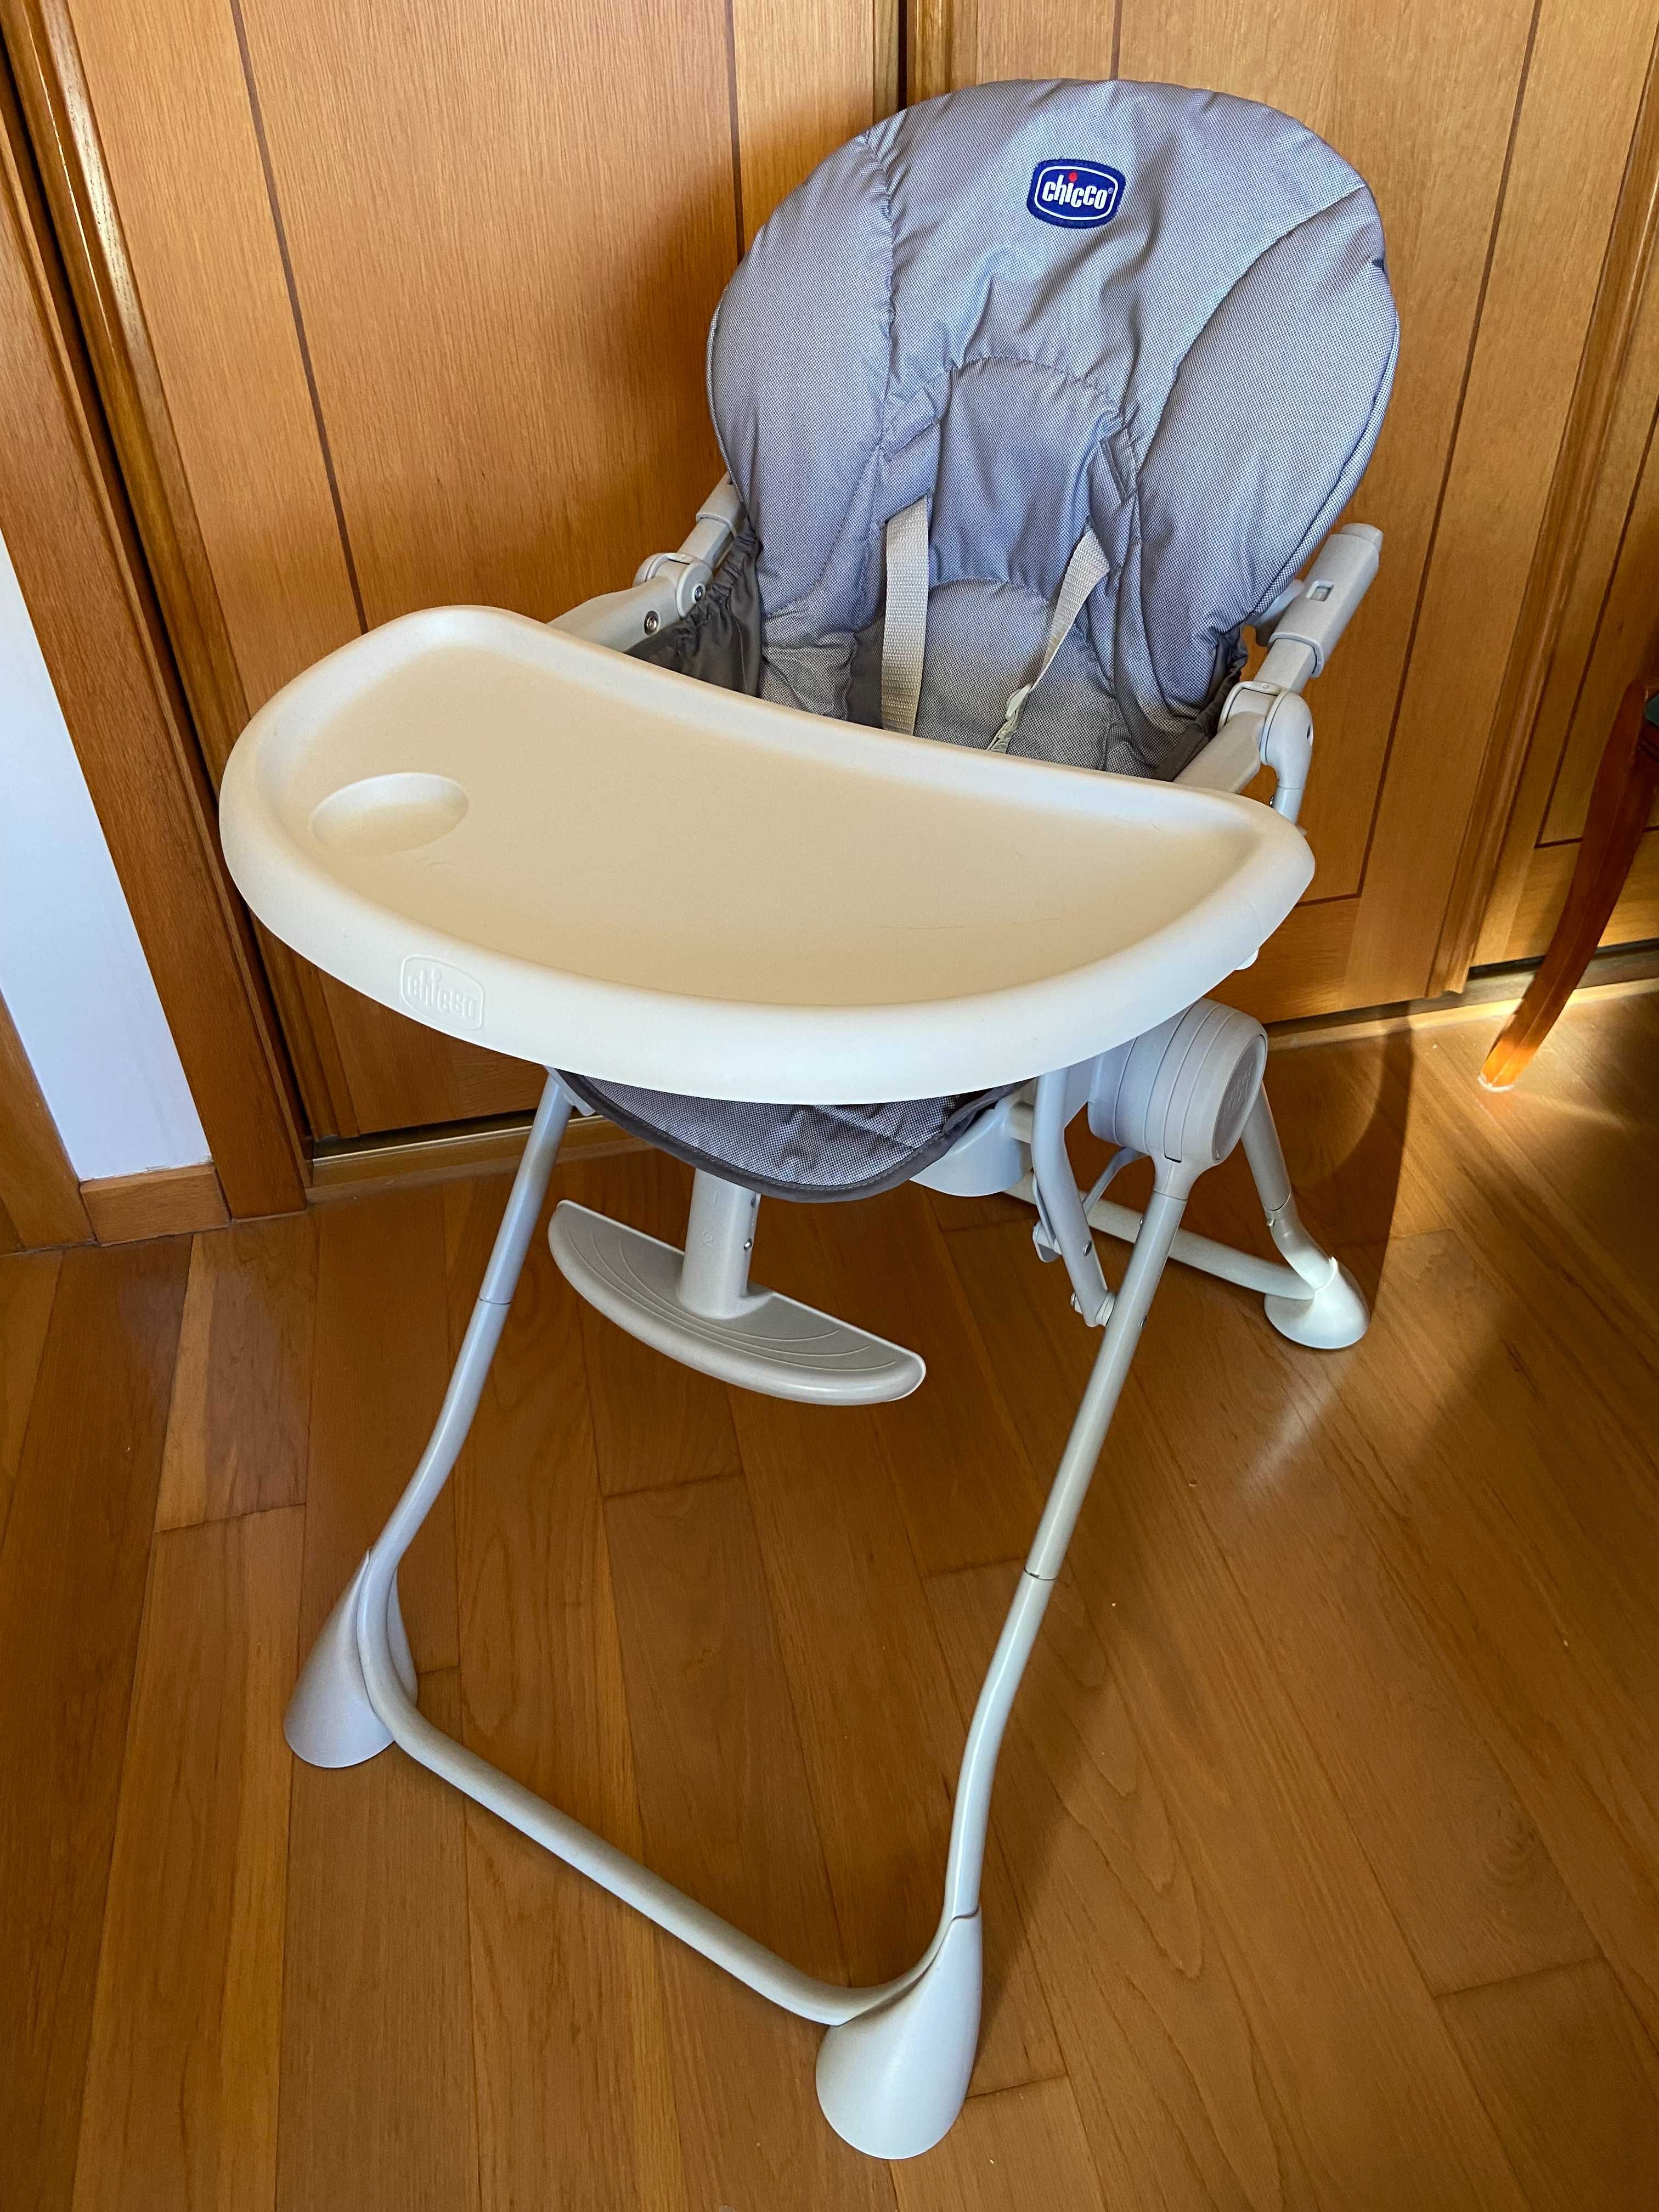 Cadeira para alimentação de bebés CHICCO